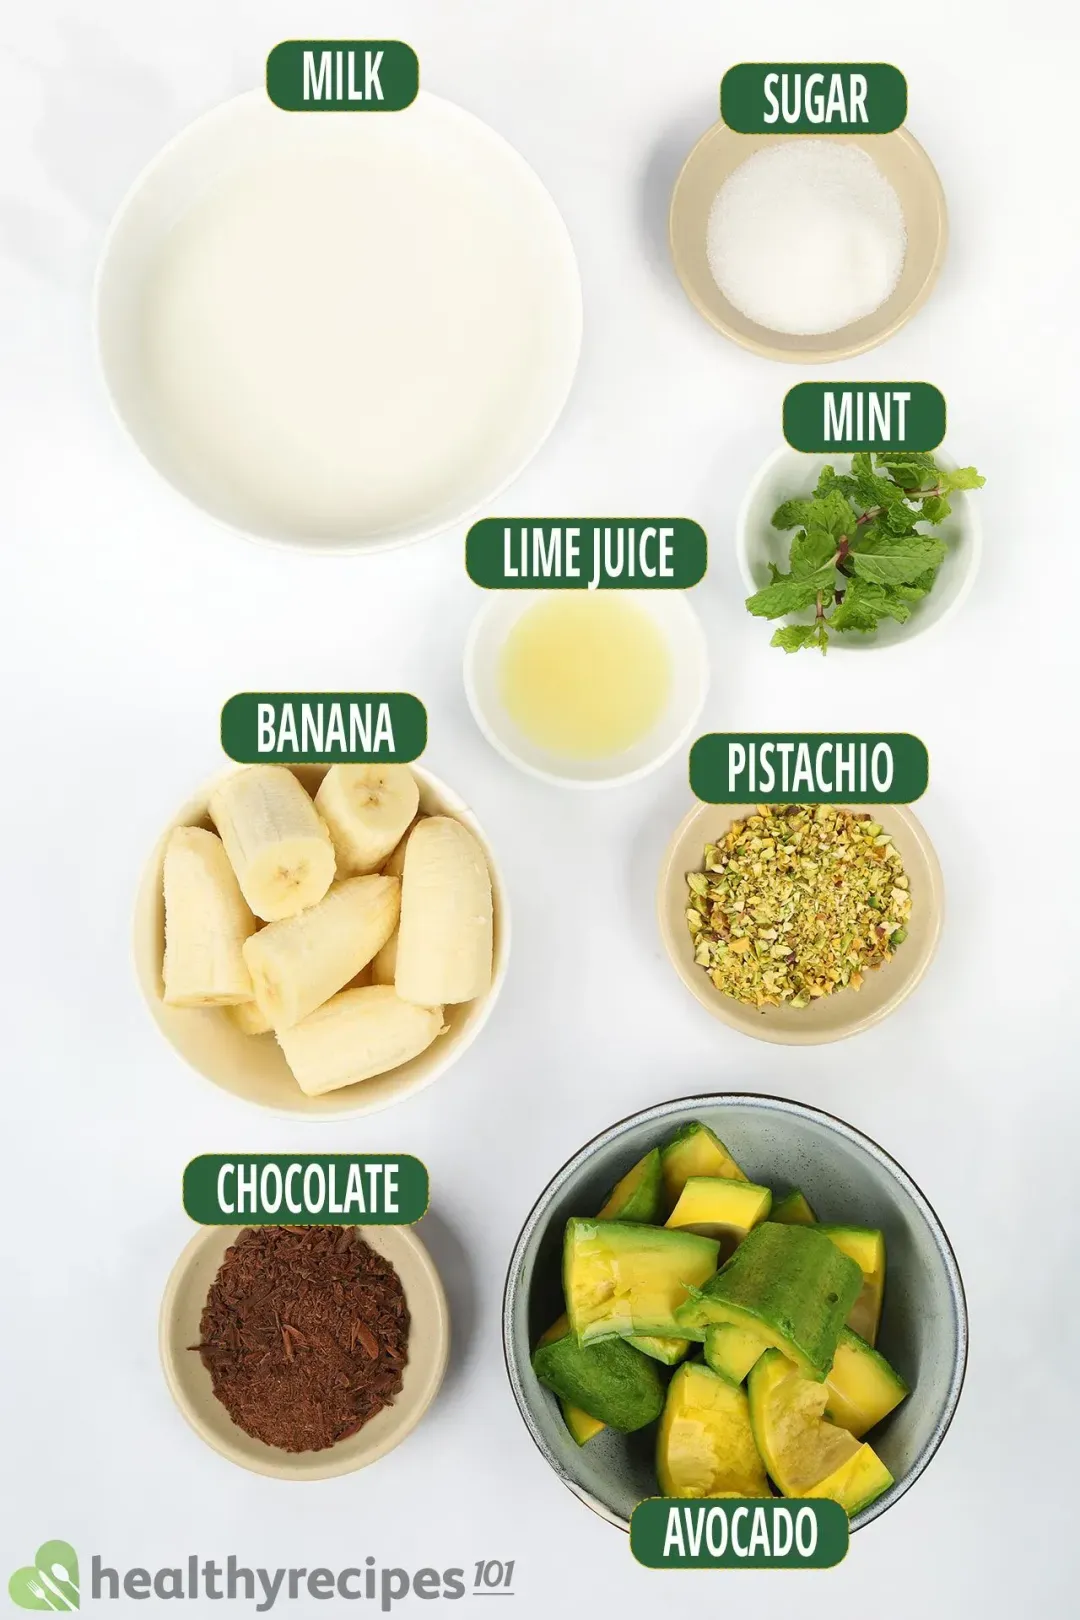 Ingredients for Avocado Ice Cream